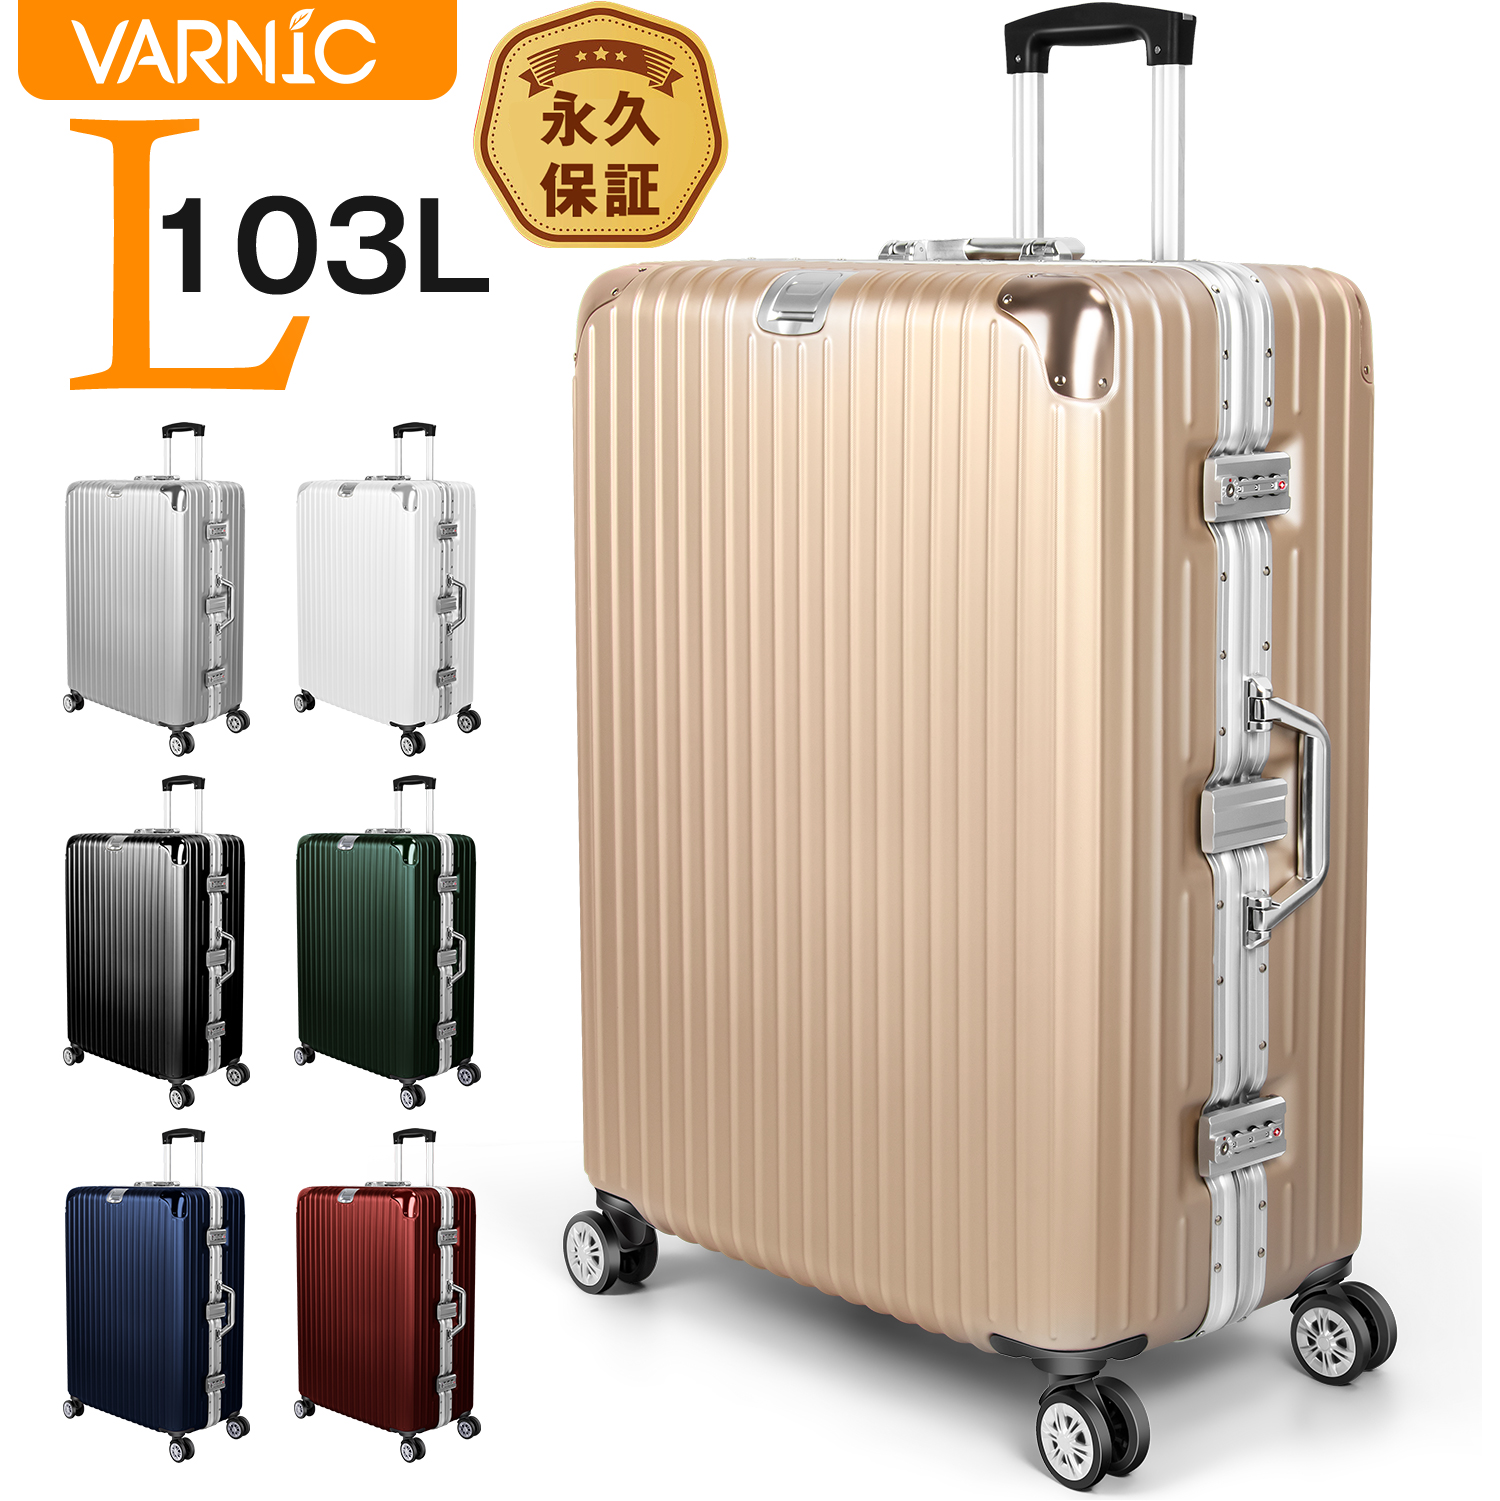 スーツケース キャリーケース キャリーバッグ Lサイズ  旅行カバン フレーム 大型  軽量 静音 ダブルキャスタ 360度回転 TSA ロック搭載 ビジネス 出張 全国旅行支援VARNIC